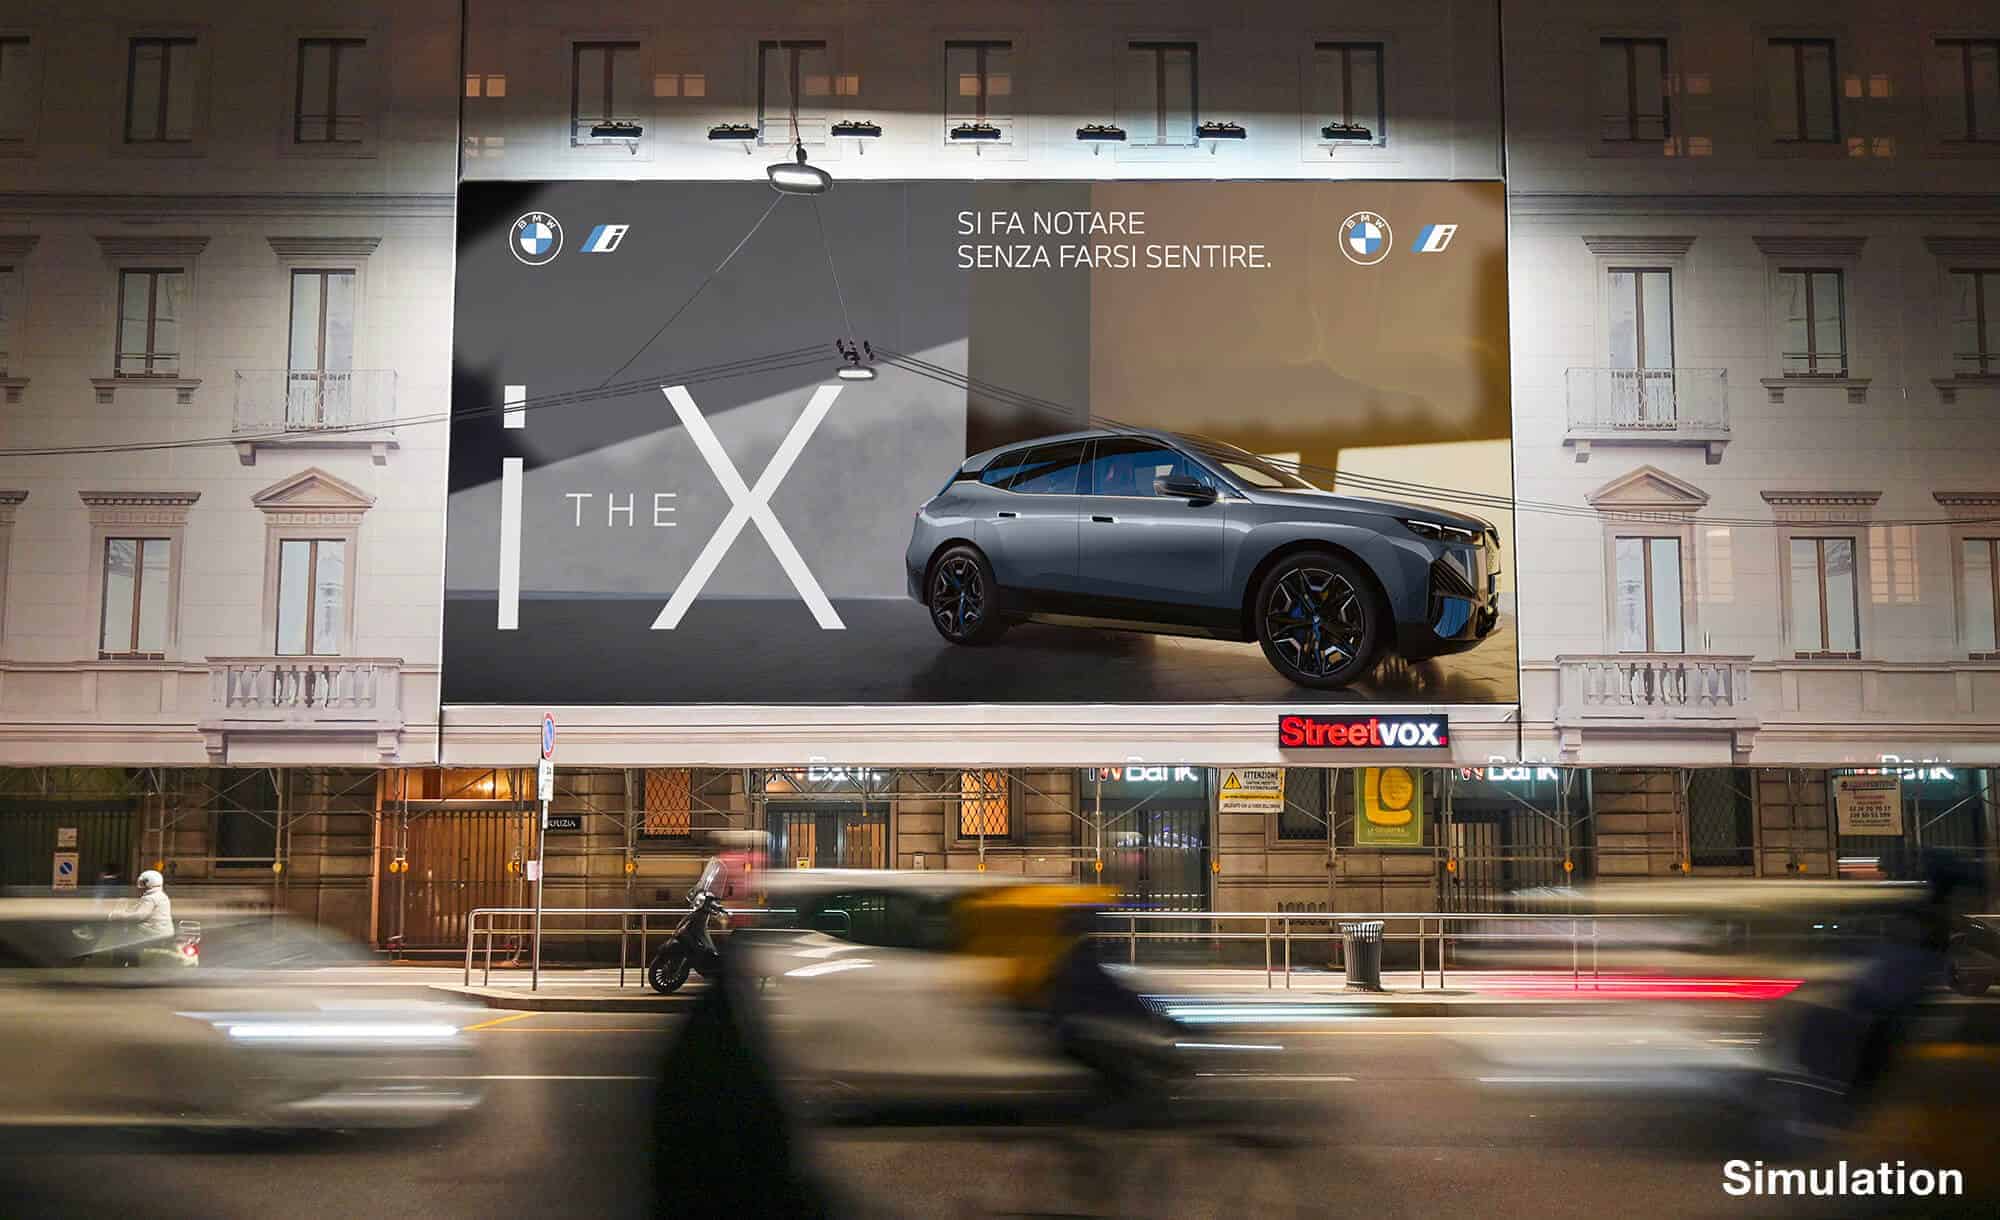 Maxi Affissione a Milano in Corso Venezia 54 con BMW (Automotive)